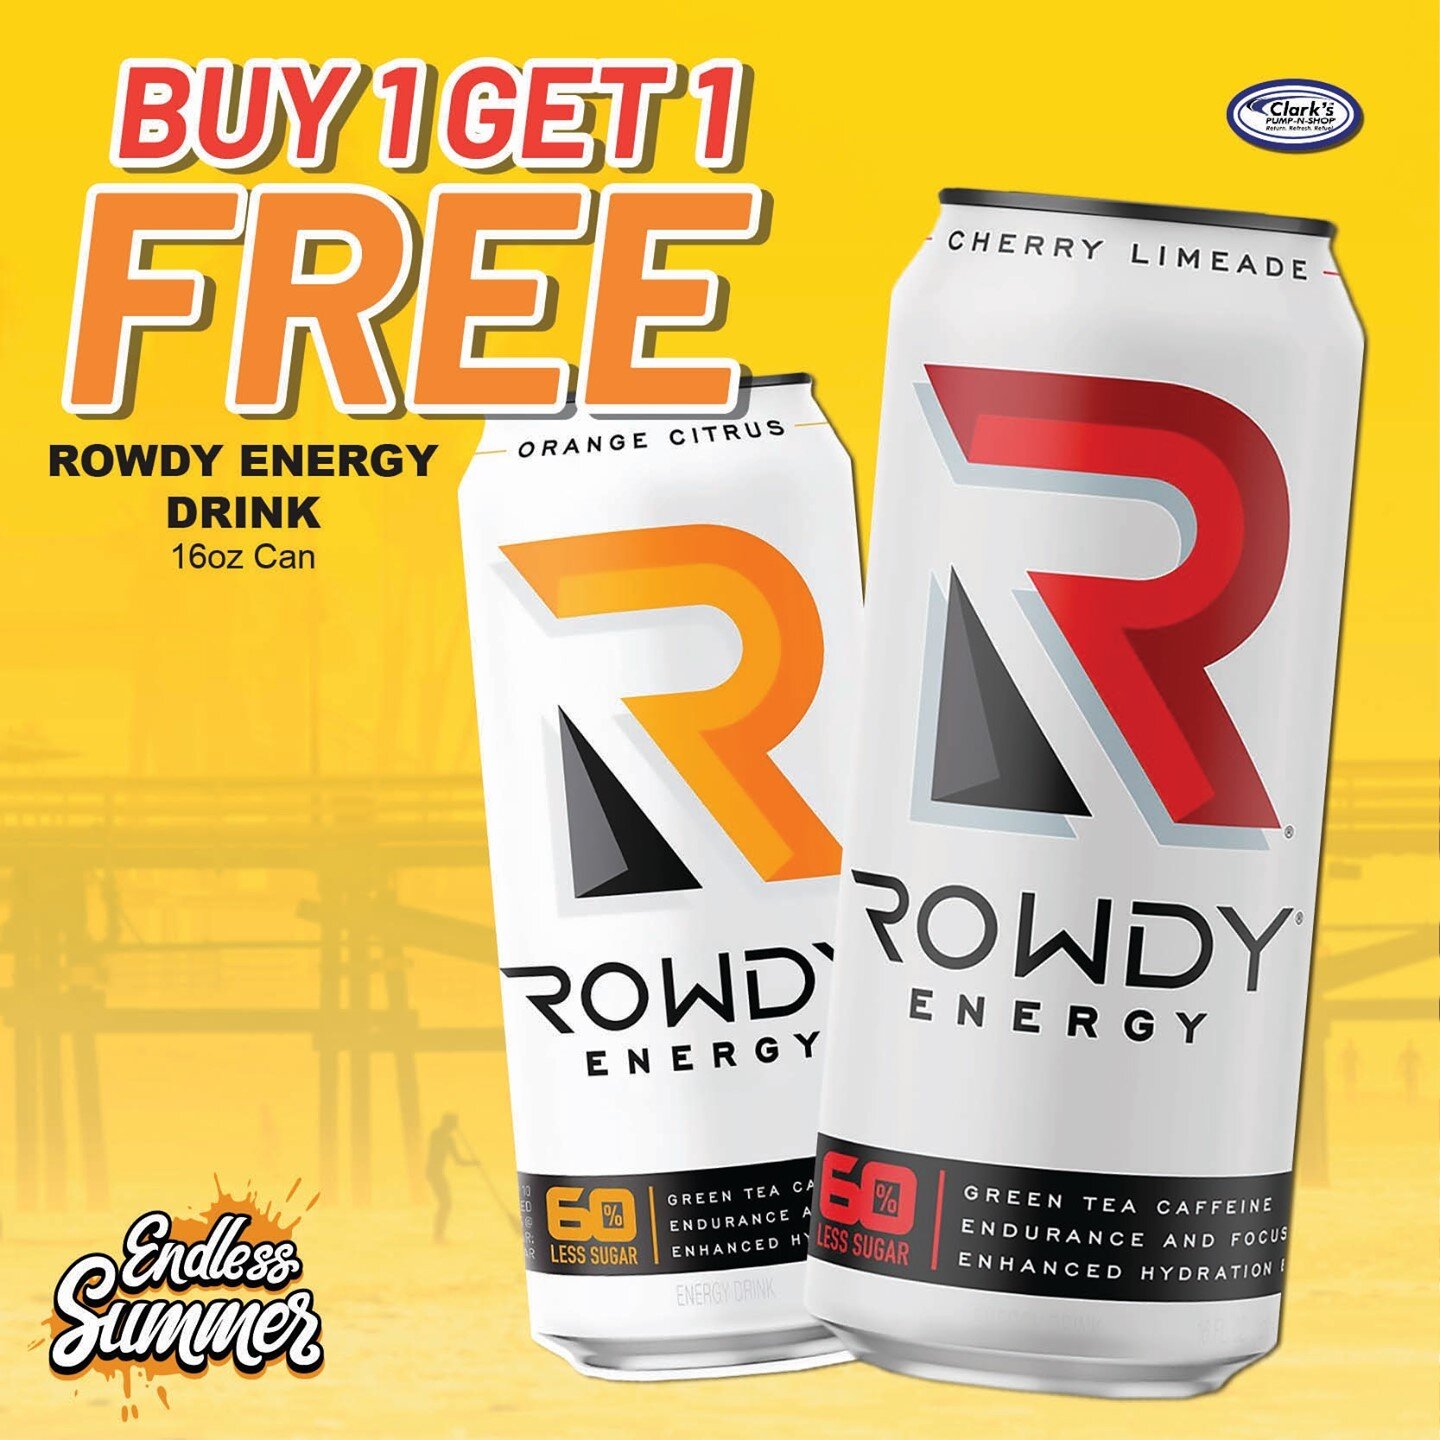 Rowdy Energy Drink 16oz Can Buy 1 Get 1 FREE #ReturnRefreshRefeul